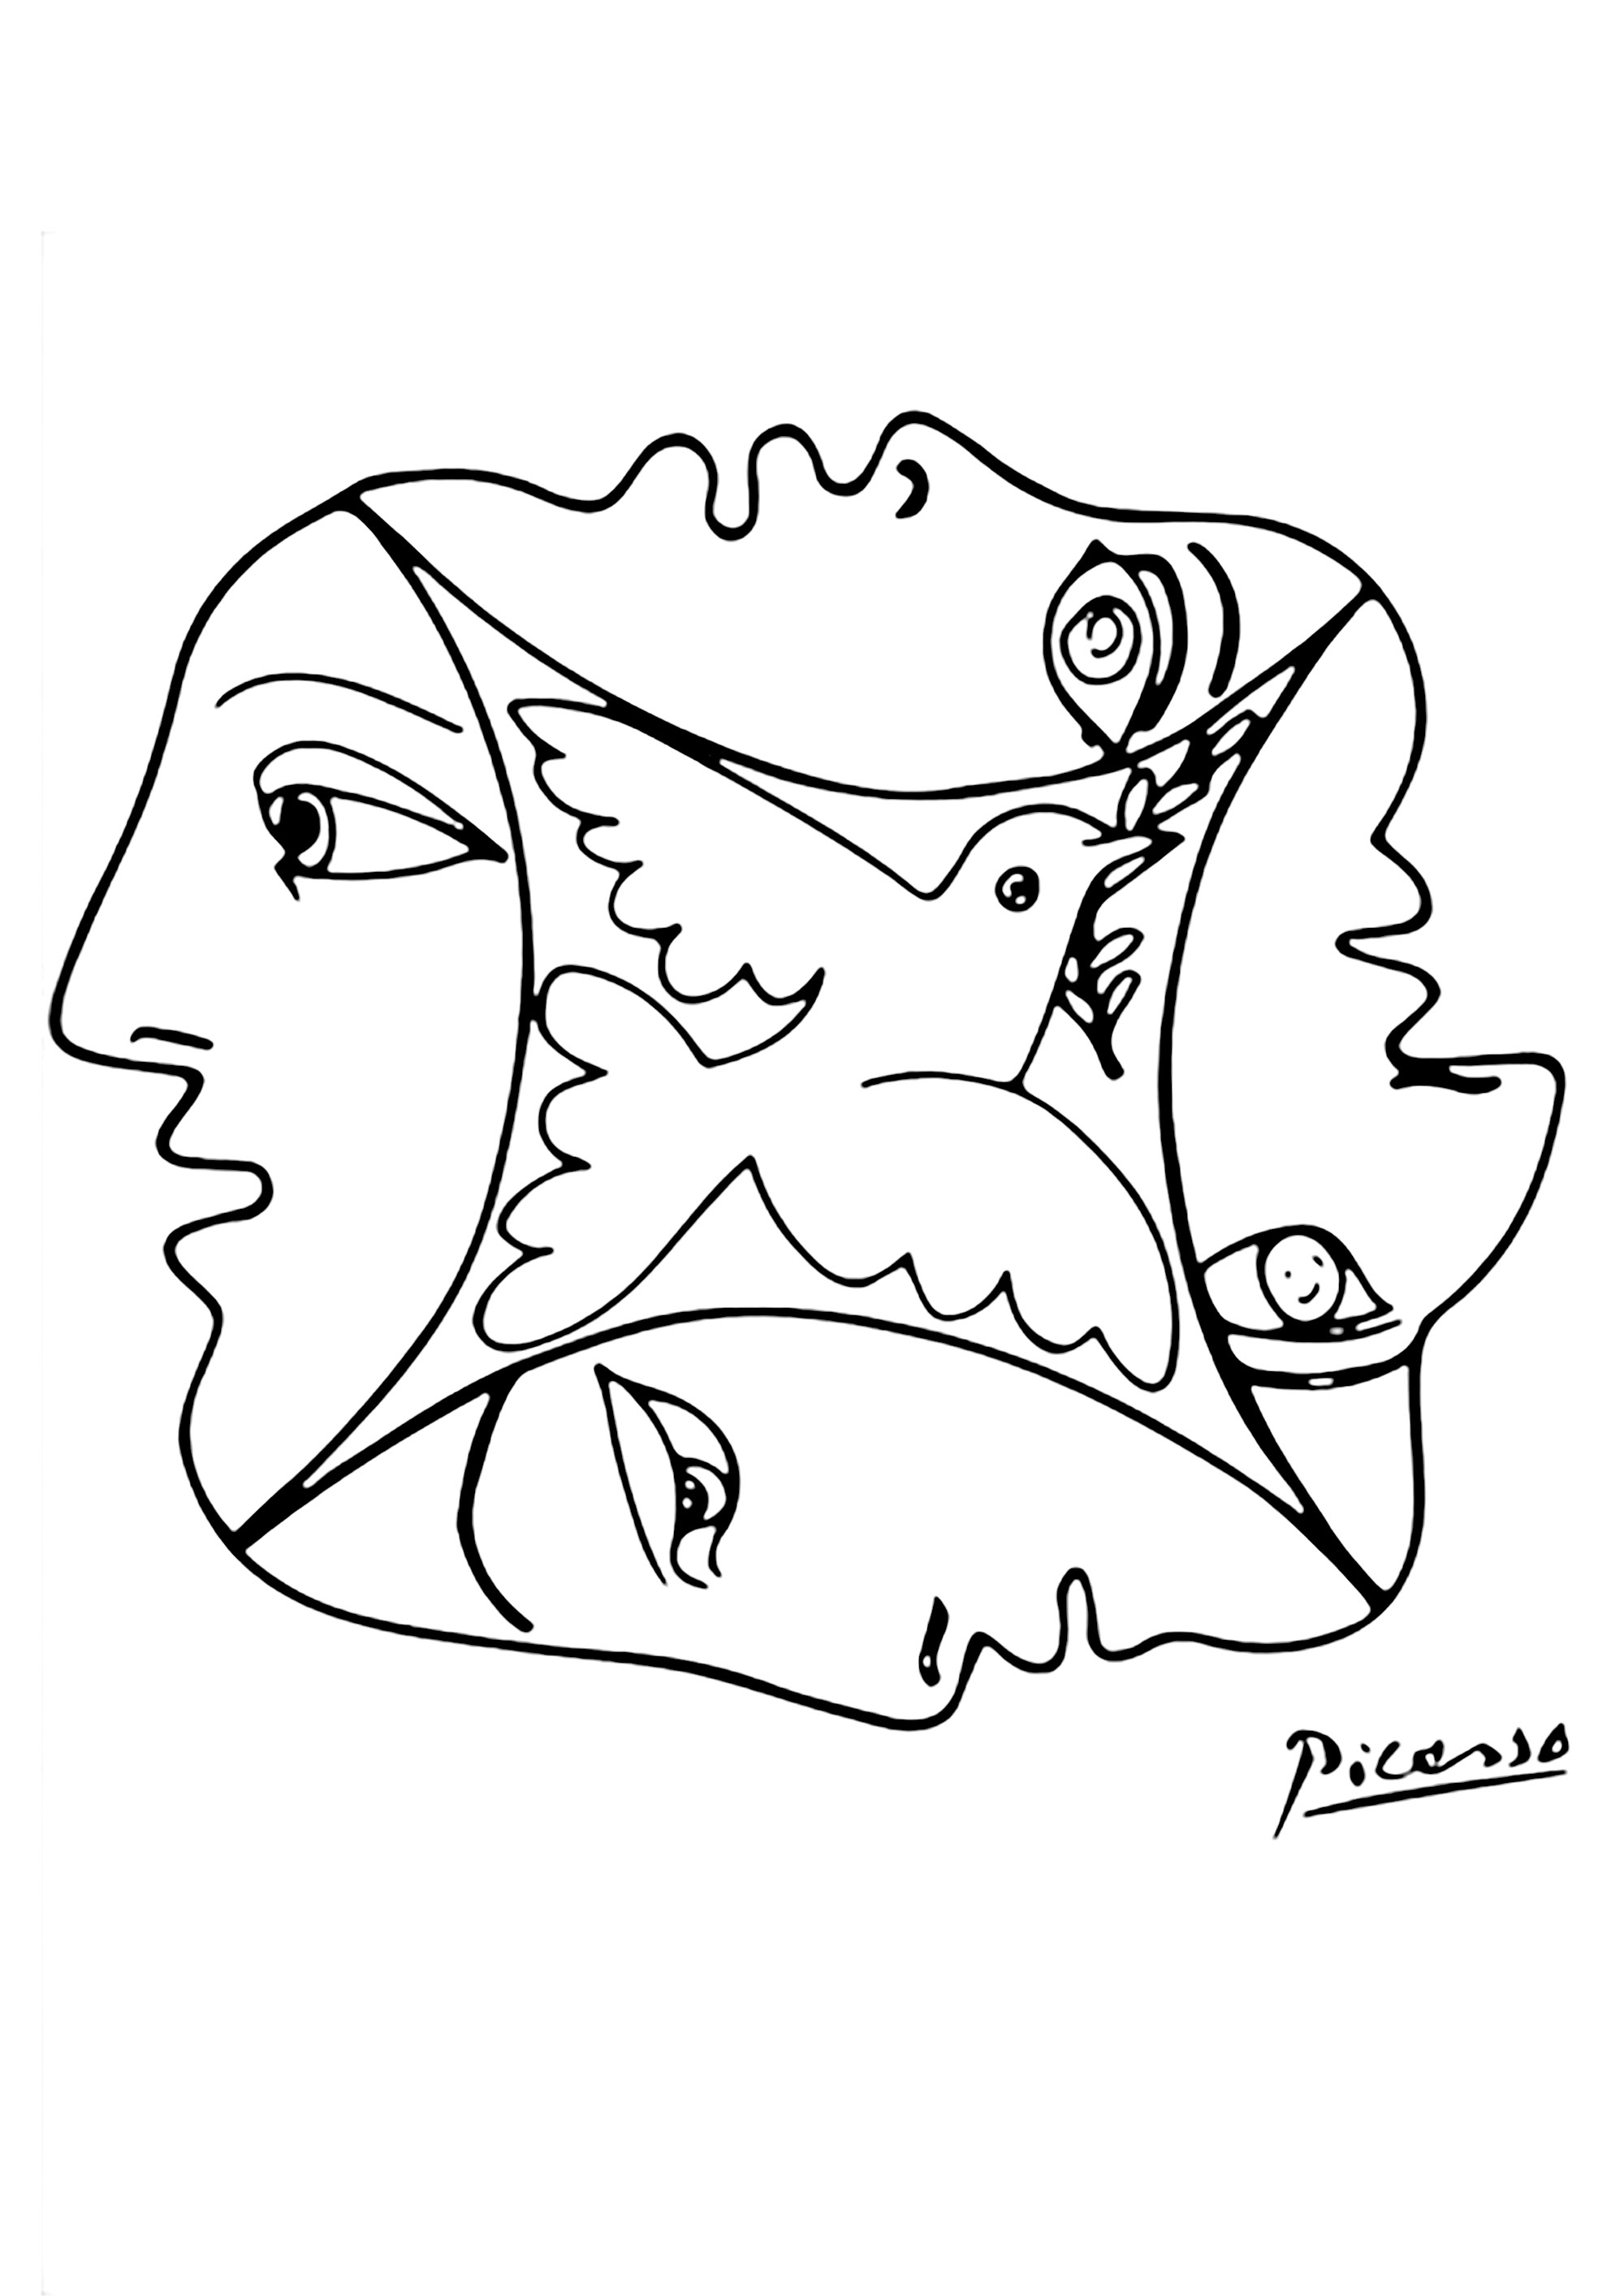 Colorazione creata da un disegno di Pablo Picasso con volti e una colomba. Magnifico disegno che simboleggia la pace e la fraternità